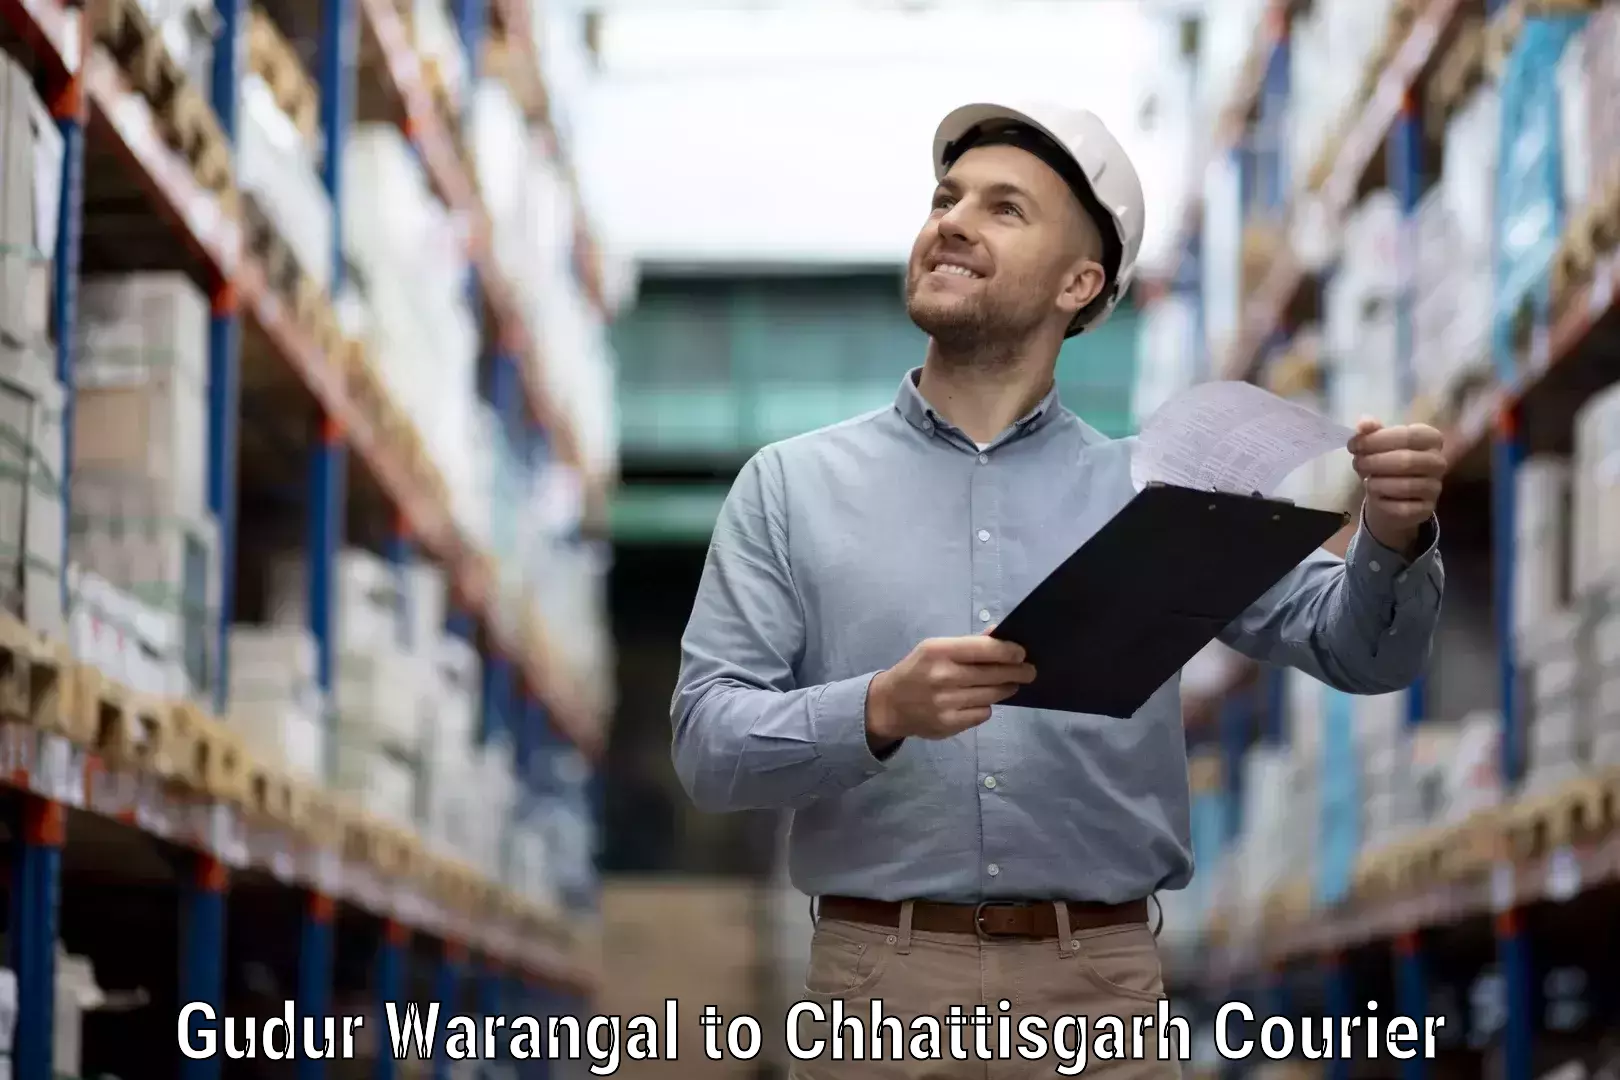 Global logistics network Gudur Warangal to Bijapur Chhattisgarh